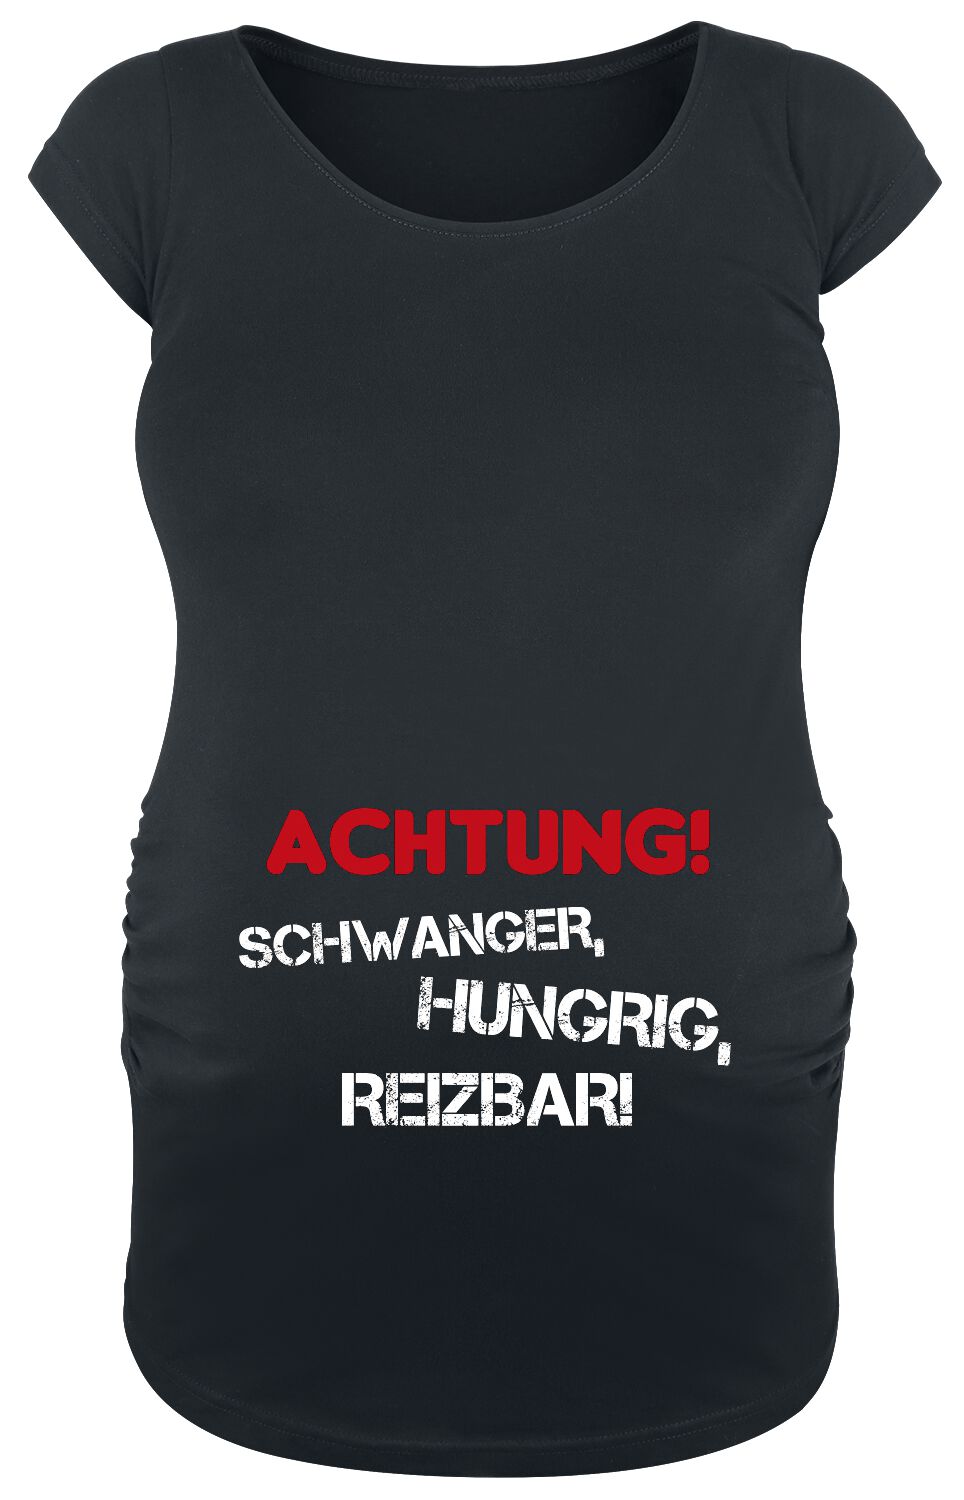 Umstandsmode Achtung! Schwanger, Hungrig, Reizbar! T-Shirt schwarz in XL